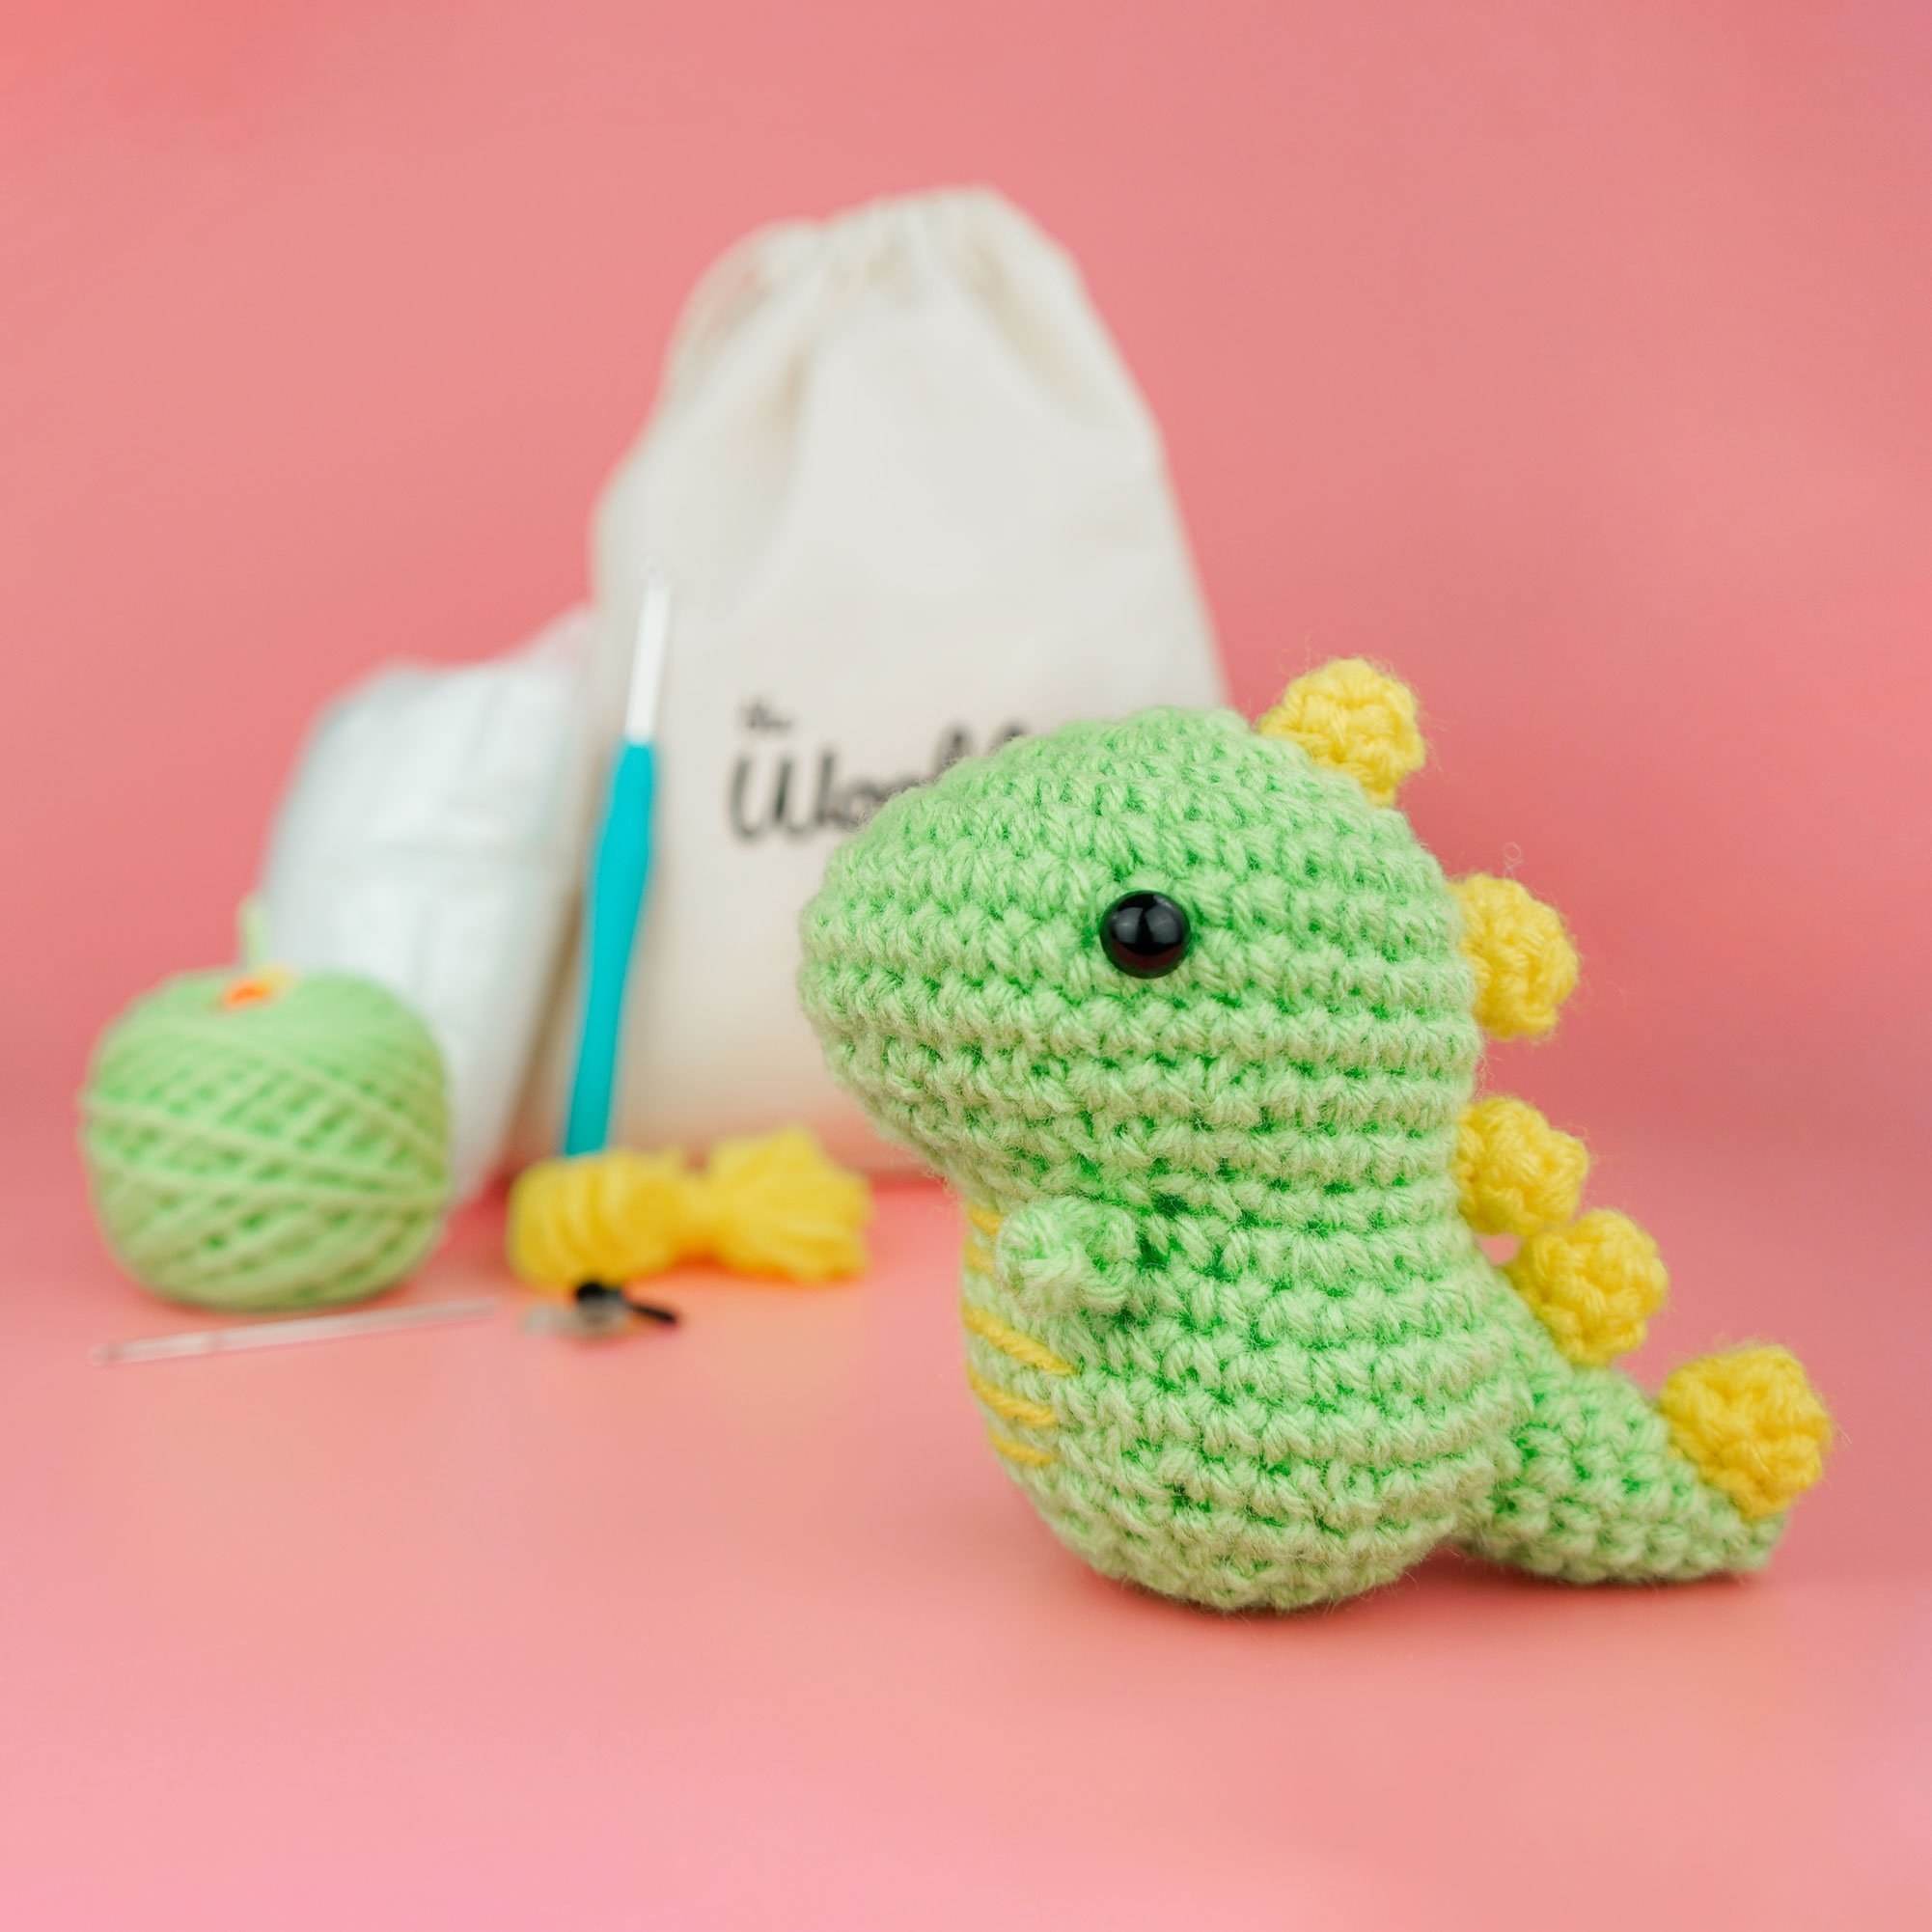 a tiny green crocheted dinosaur